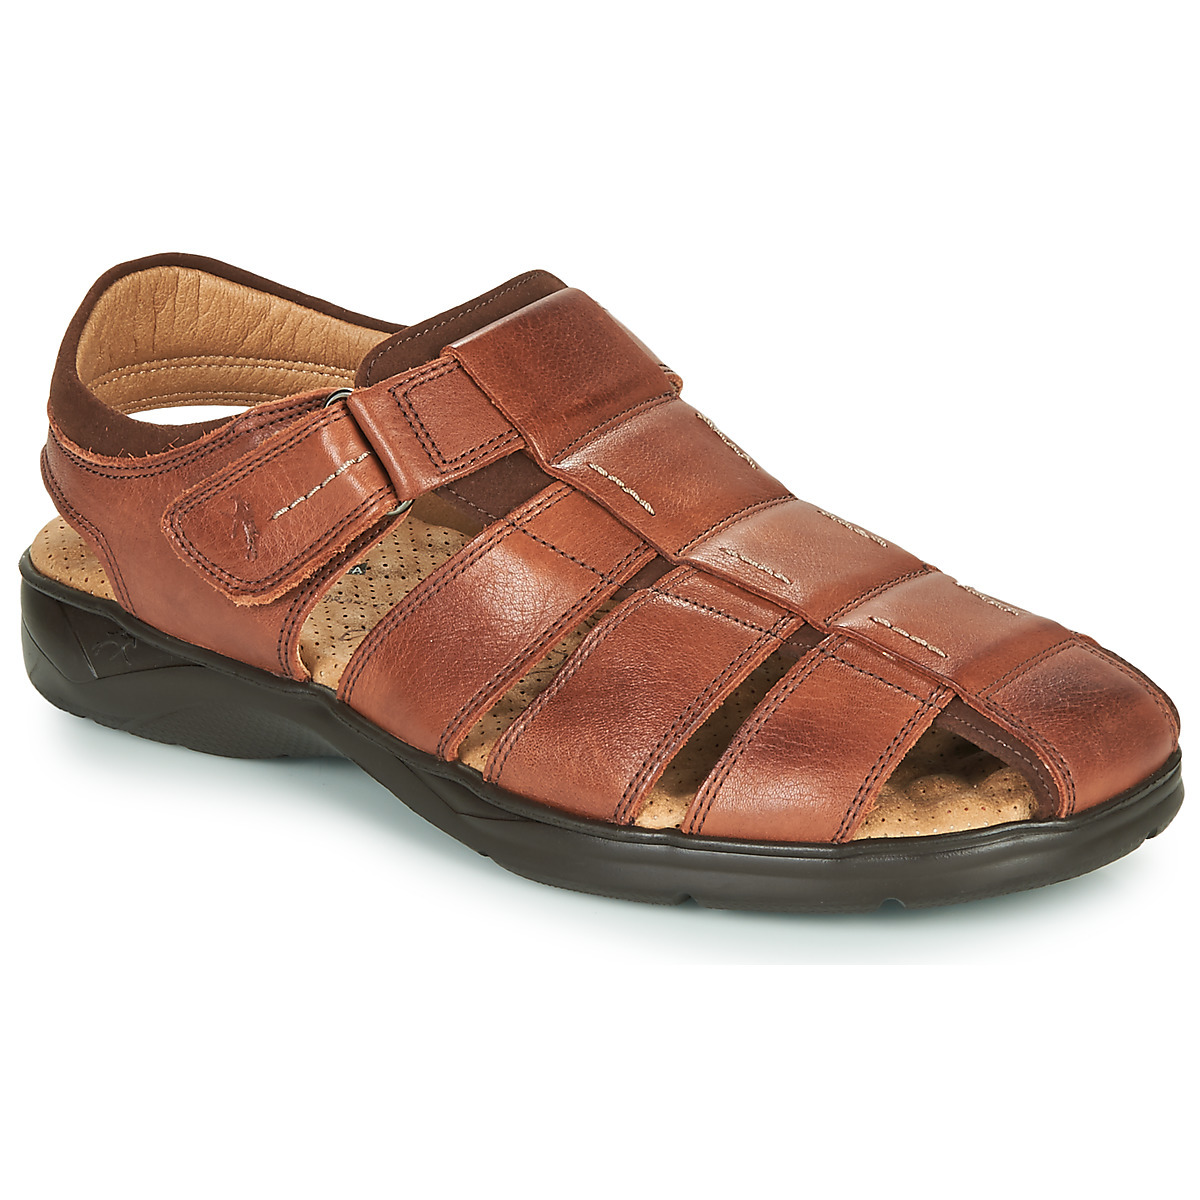 Fluchos - Man Sandals in Brown by Spartoo GOOFASH